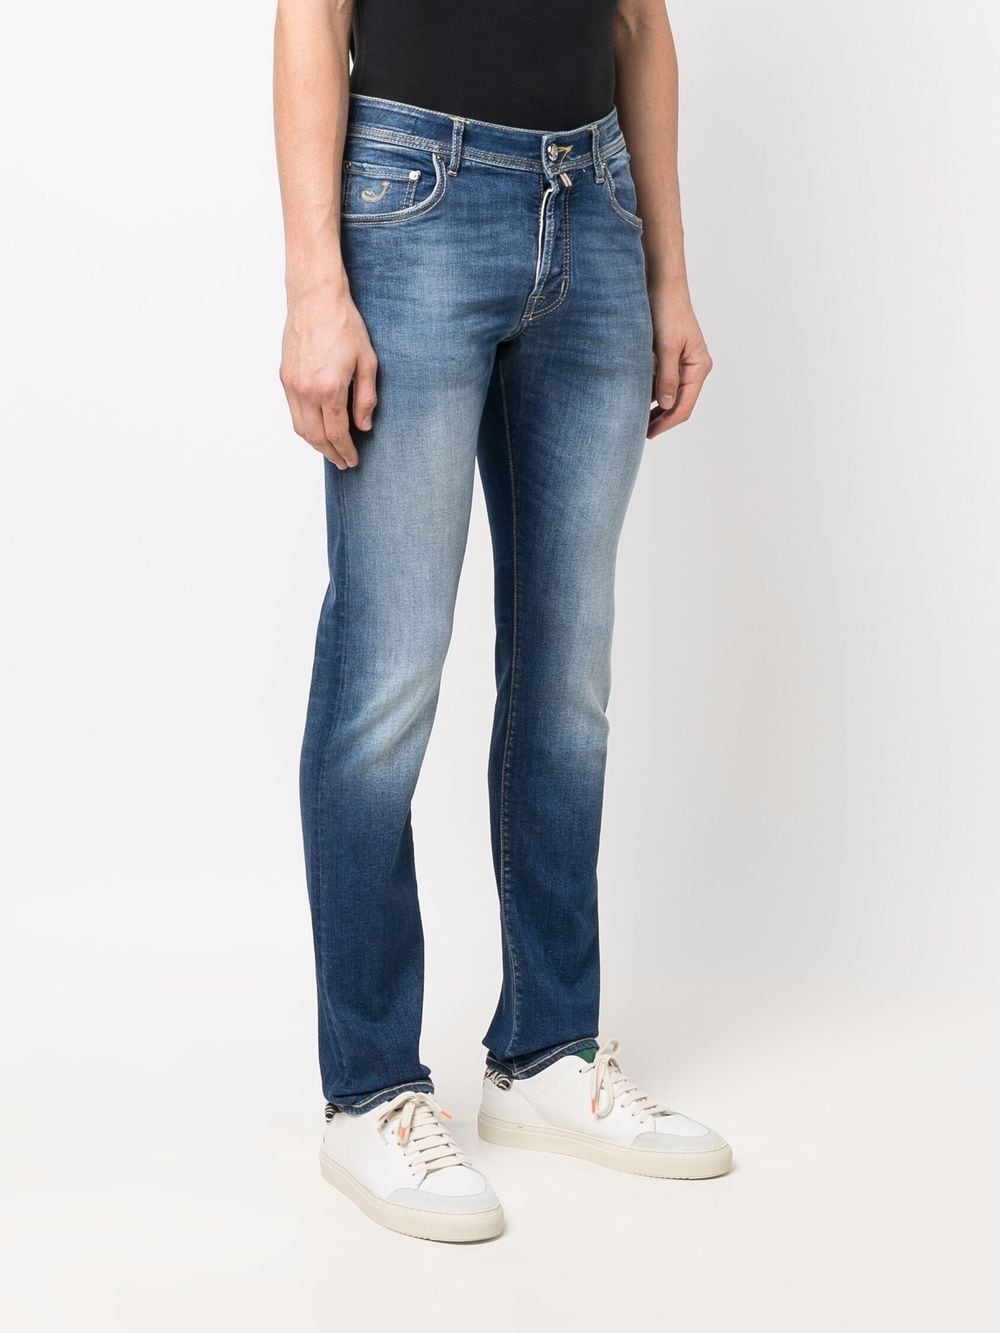 фото Jacob cohen джинсы кроя слим с эффектом градиента